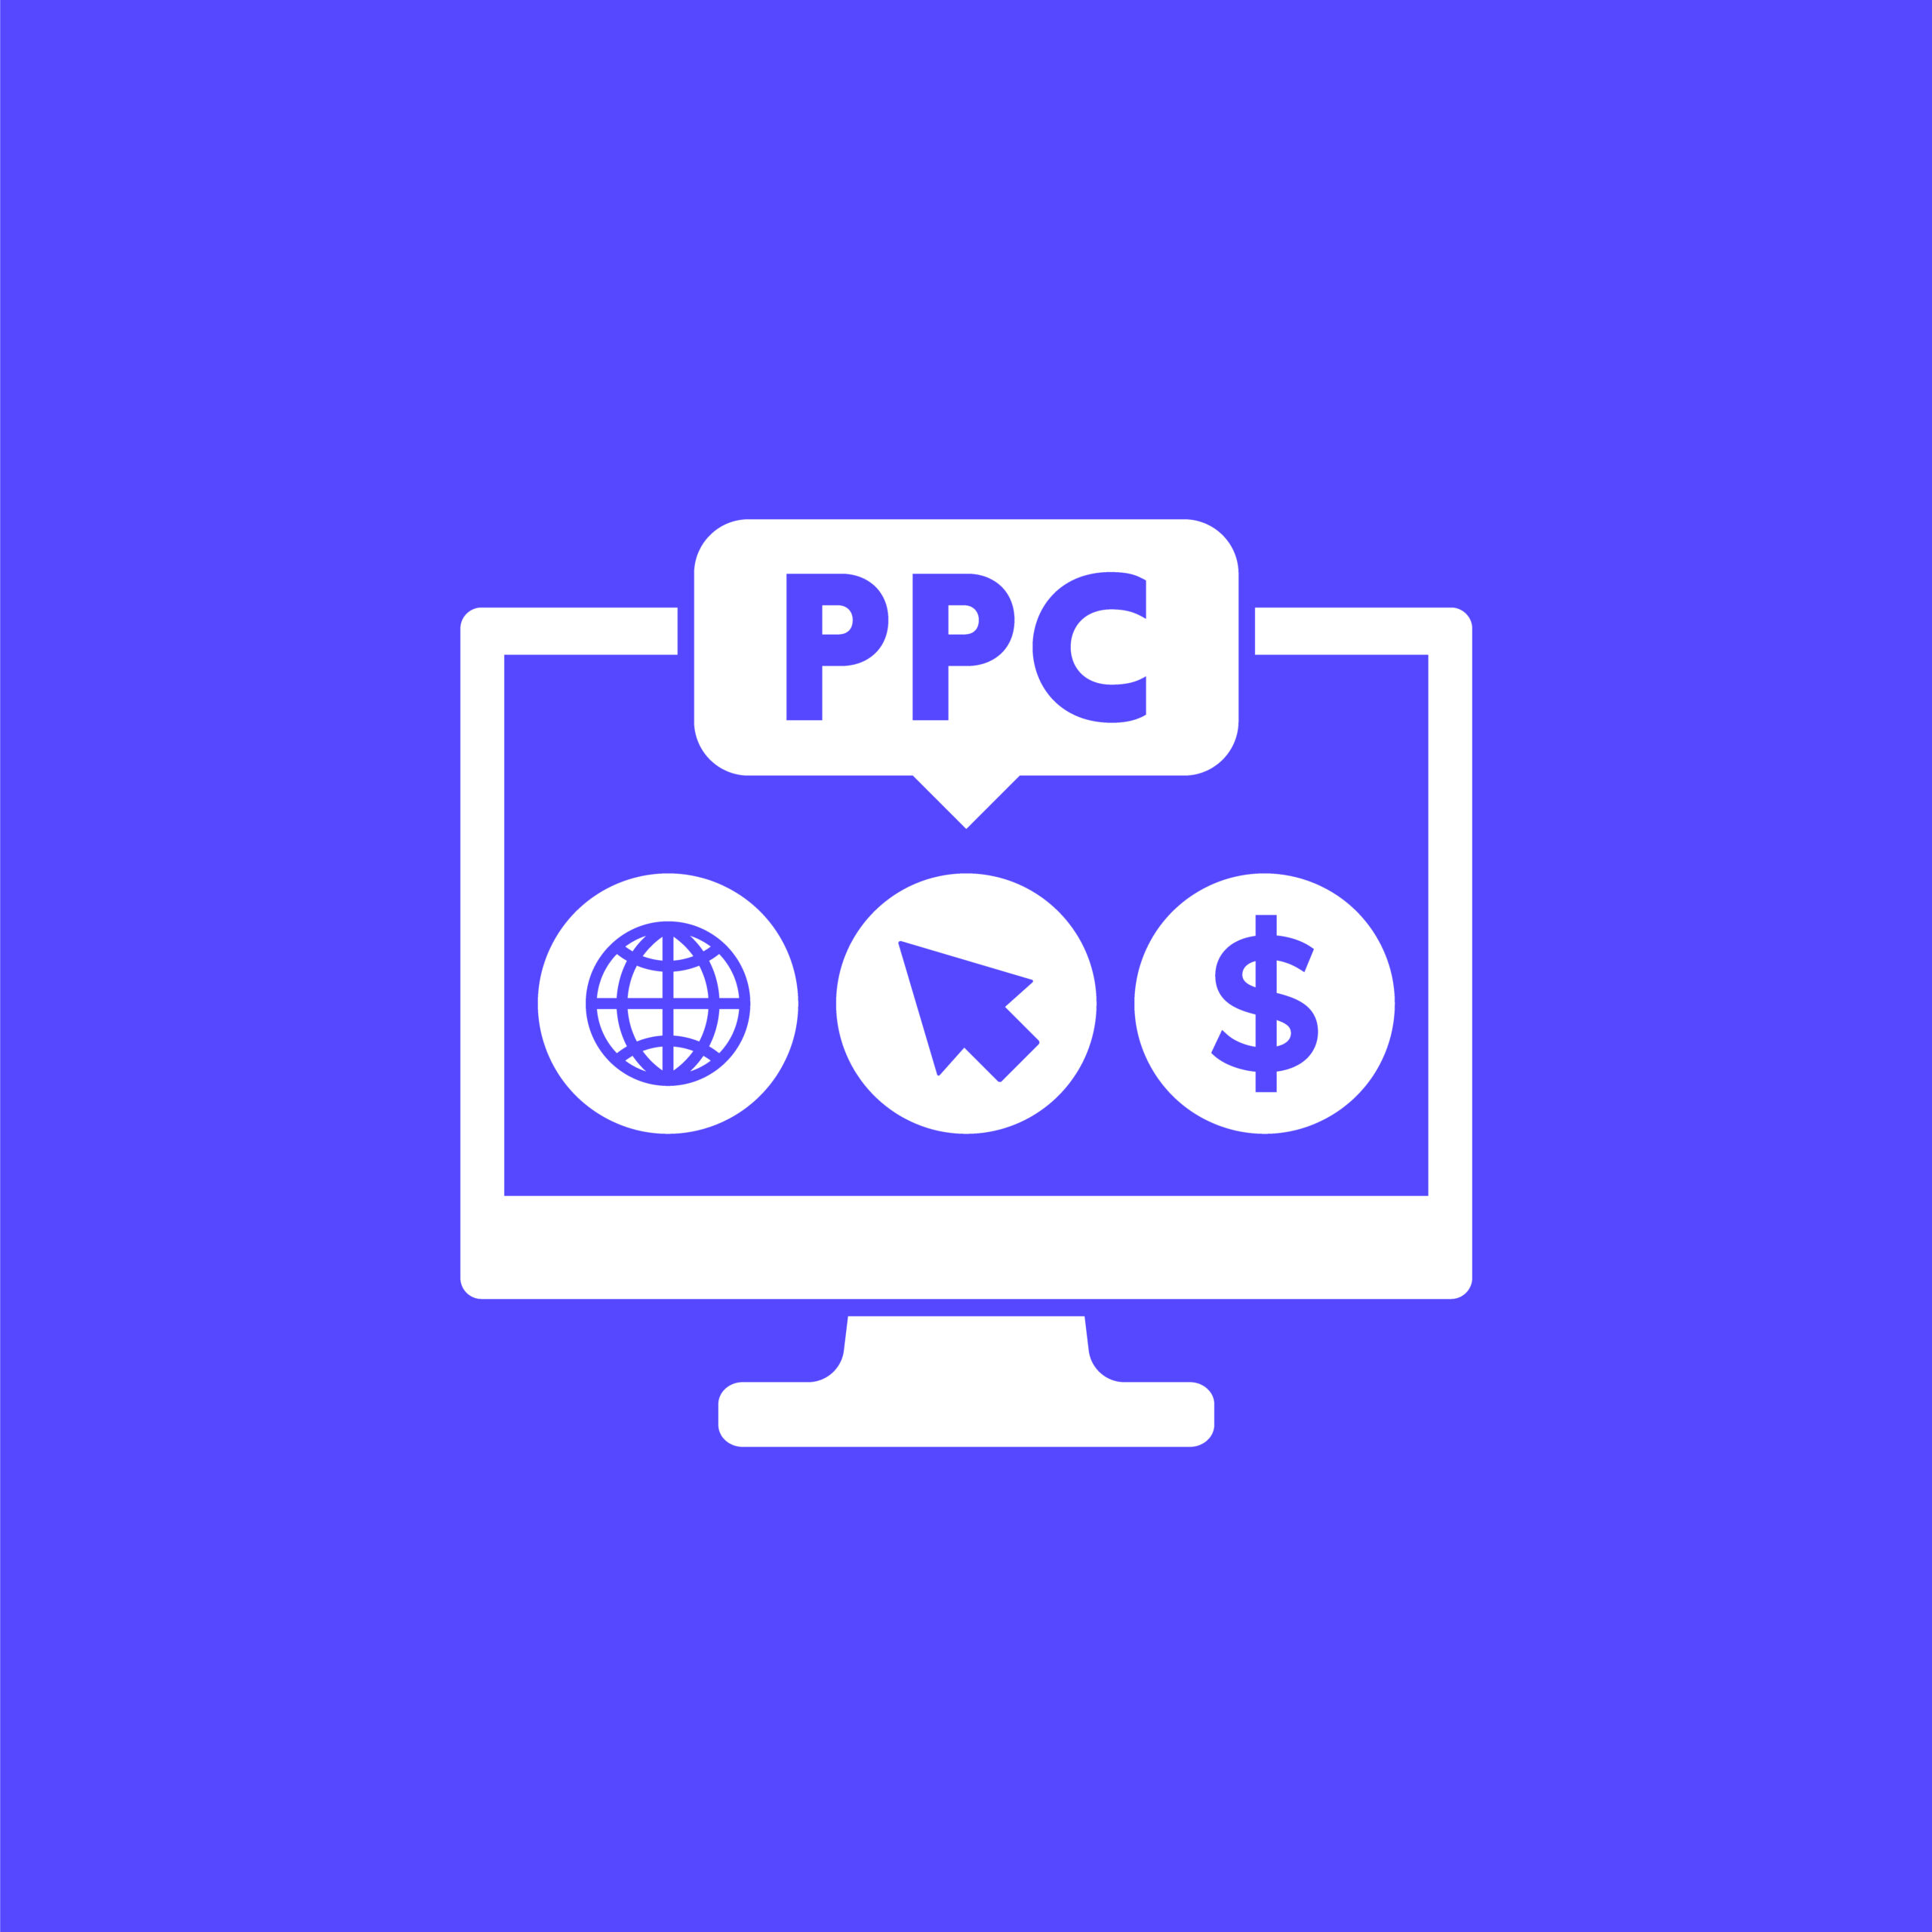 ppc pay per click vector icon for web scaled Jijo Joseph